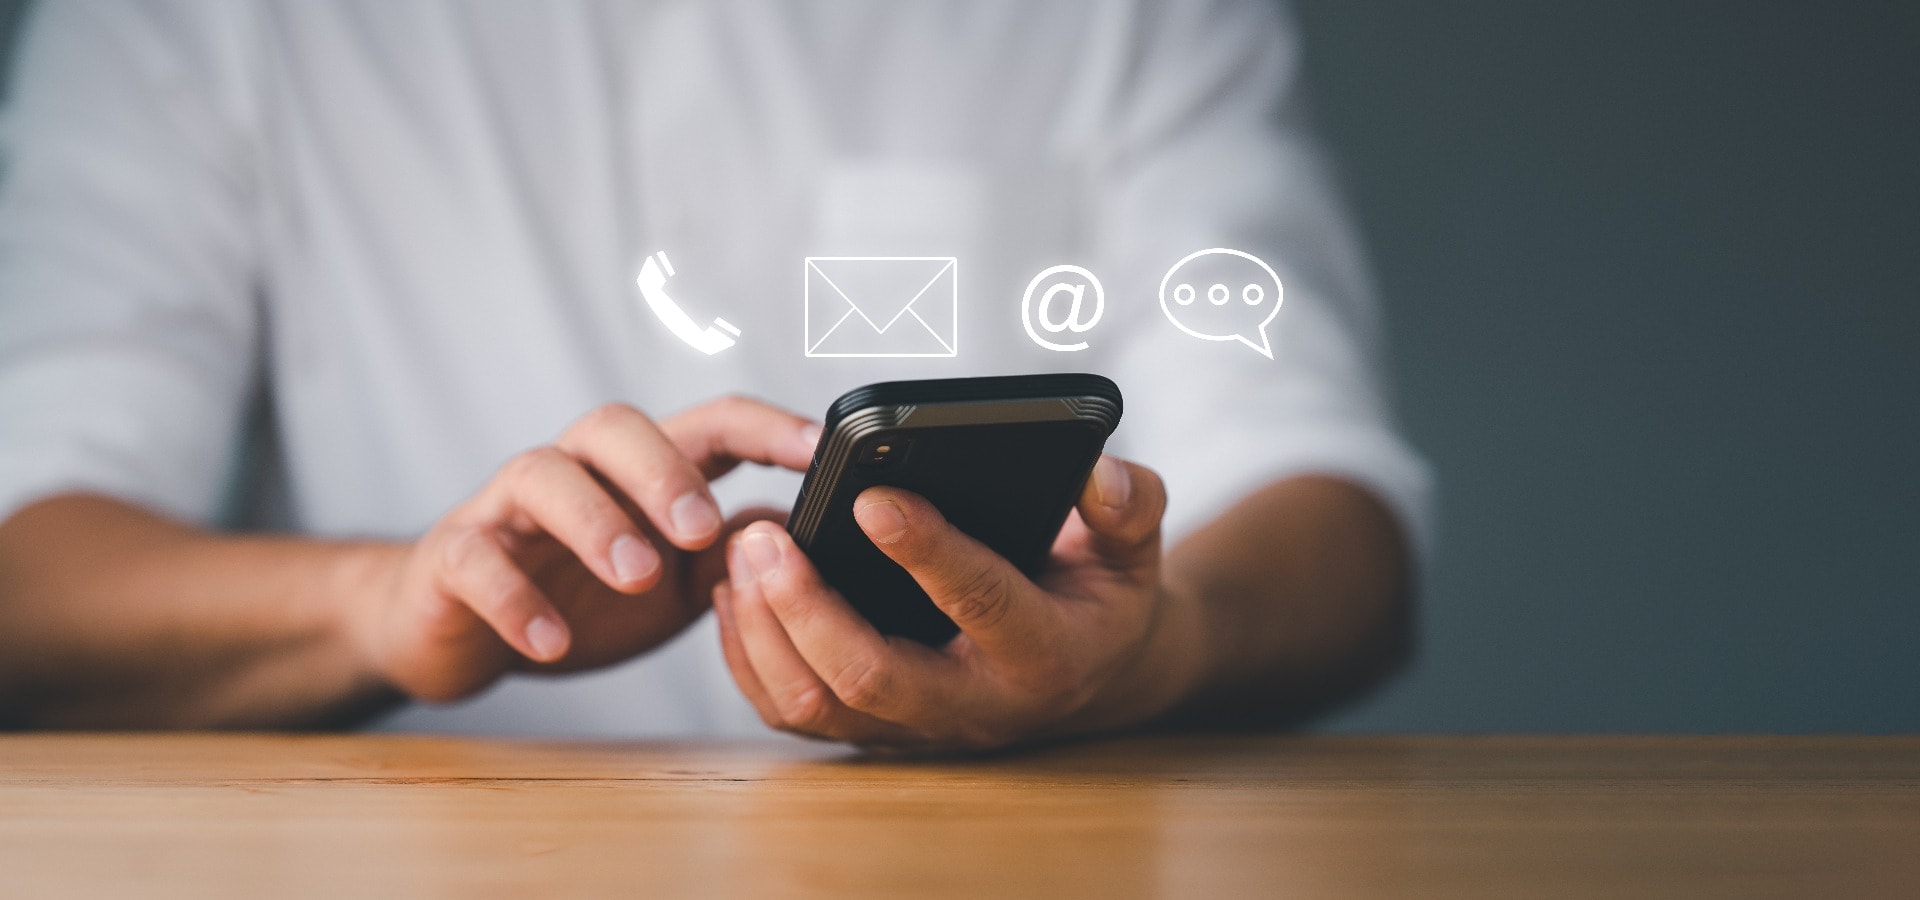 Kunden-Support-Hotline Kontaktieren Sie uns Menschen Verbindung. Geschäftsmann mit Smart Phone und den Symbolen für E-Mail, Telefon, Adresse und Chatnachrichten.